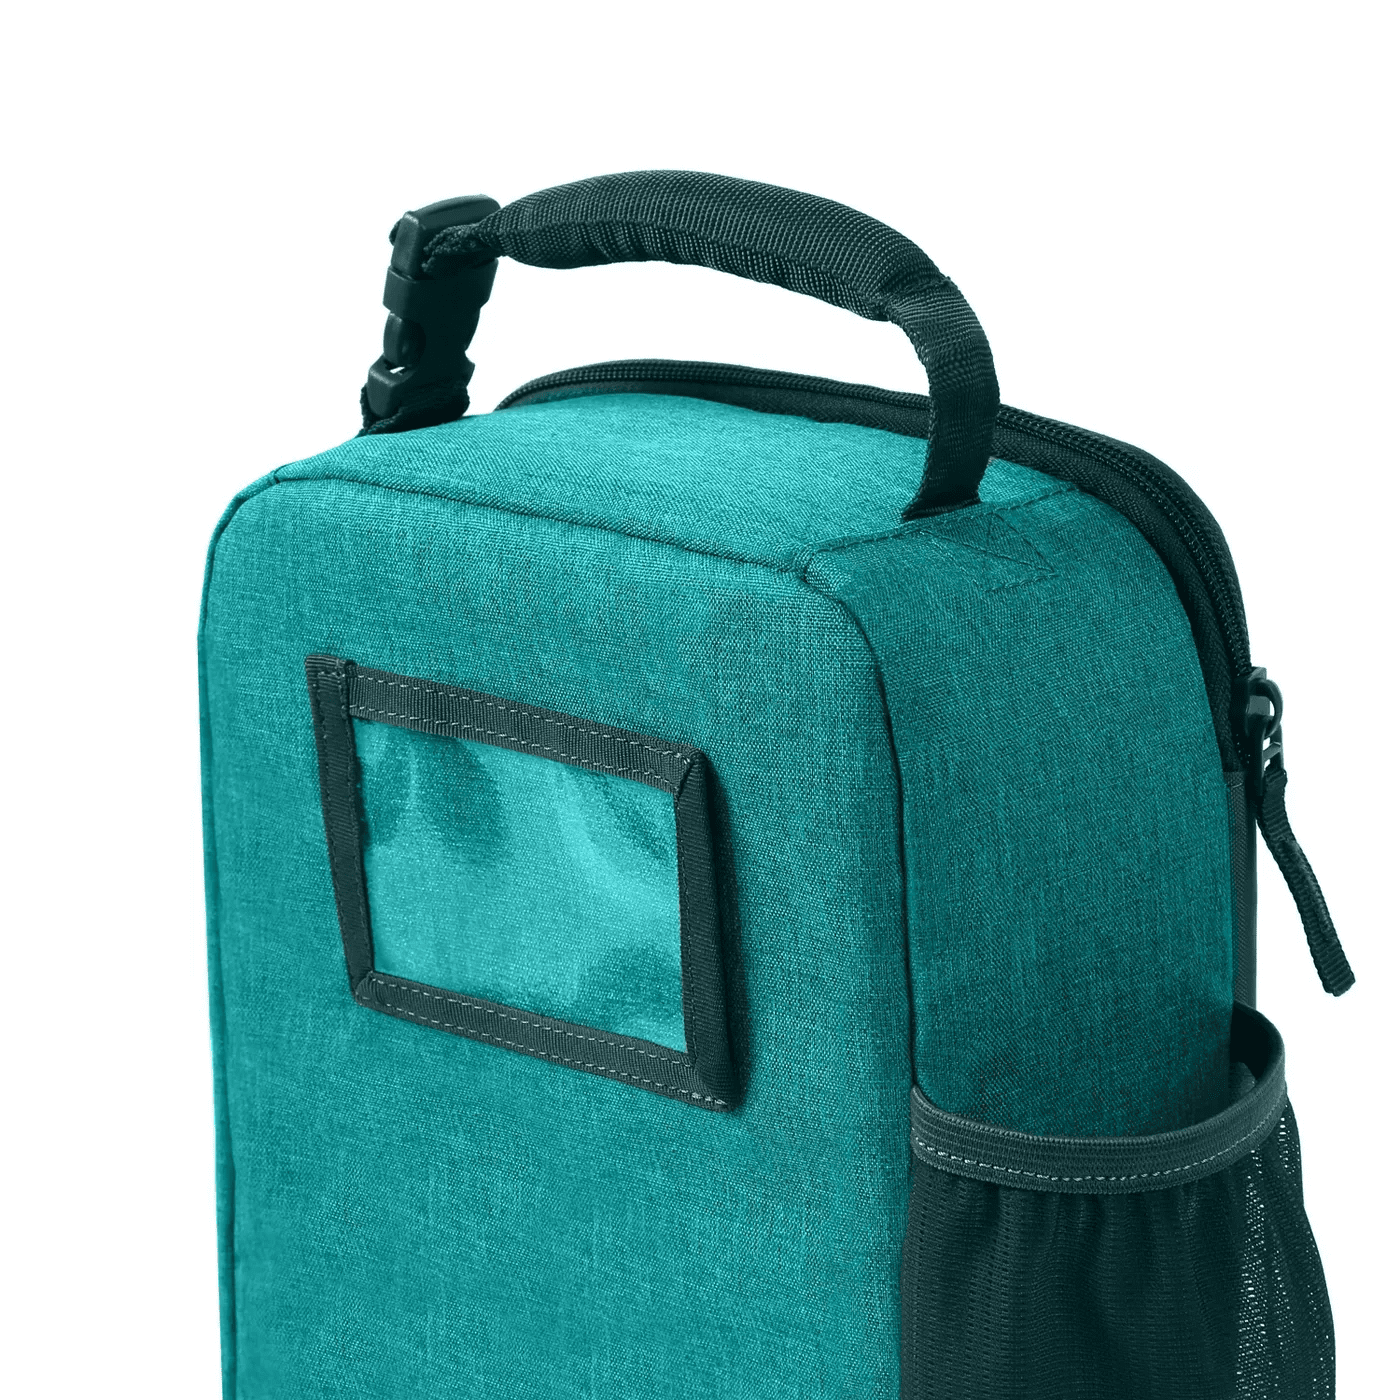 Fulton Bag Co. Upright Lunch Bag - Hushed Violet 1 ct